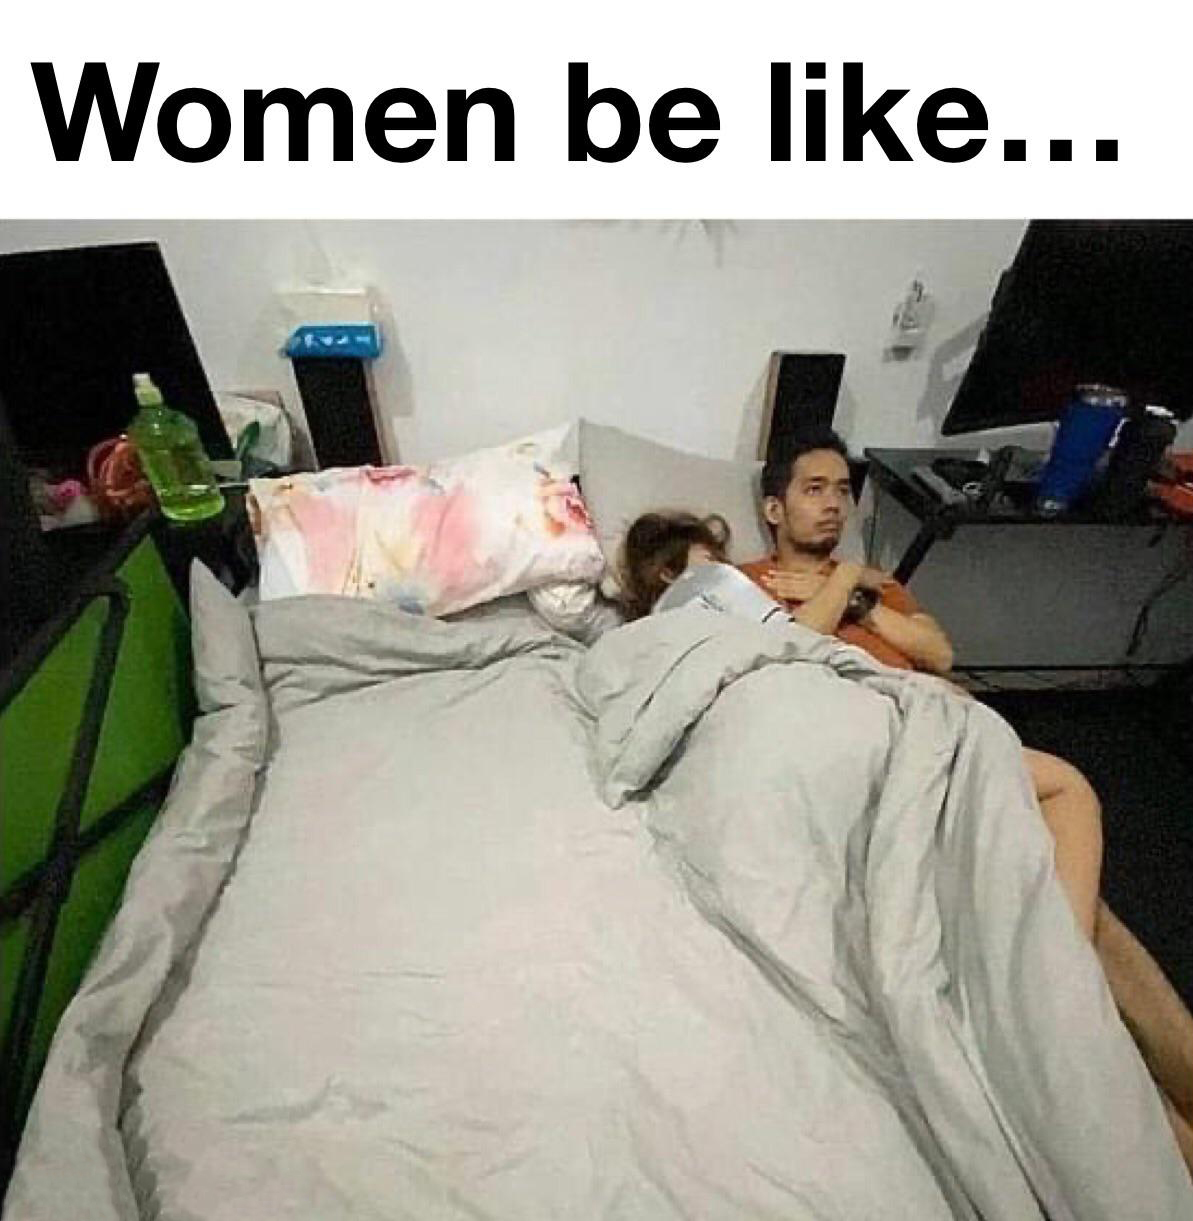 my girlfriend sleeps - Women be ...